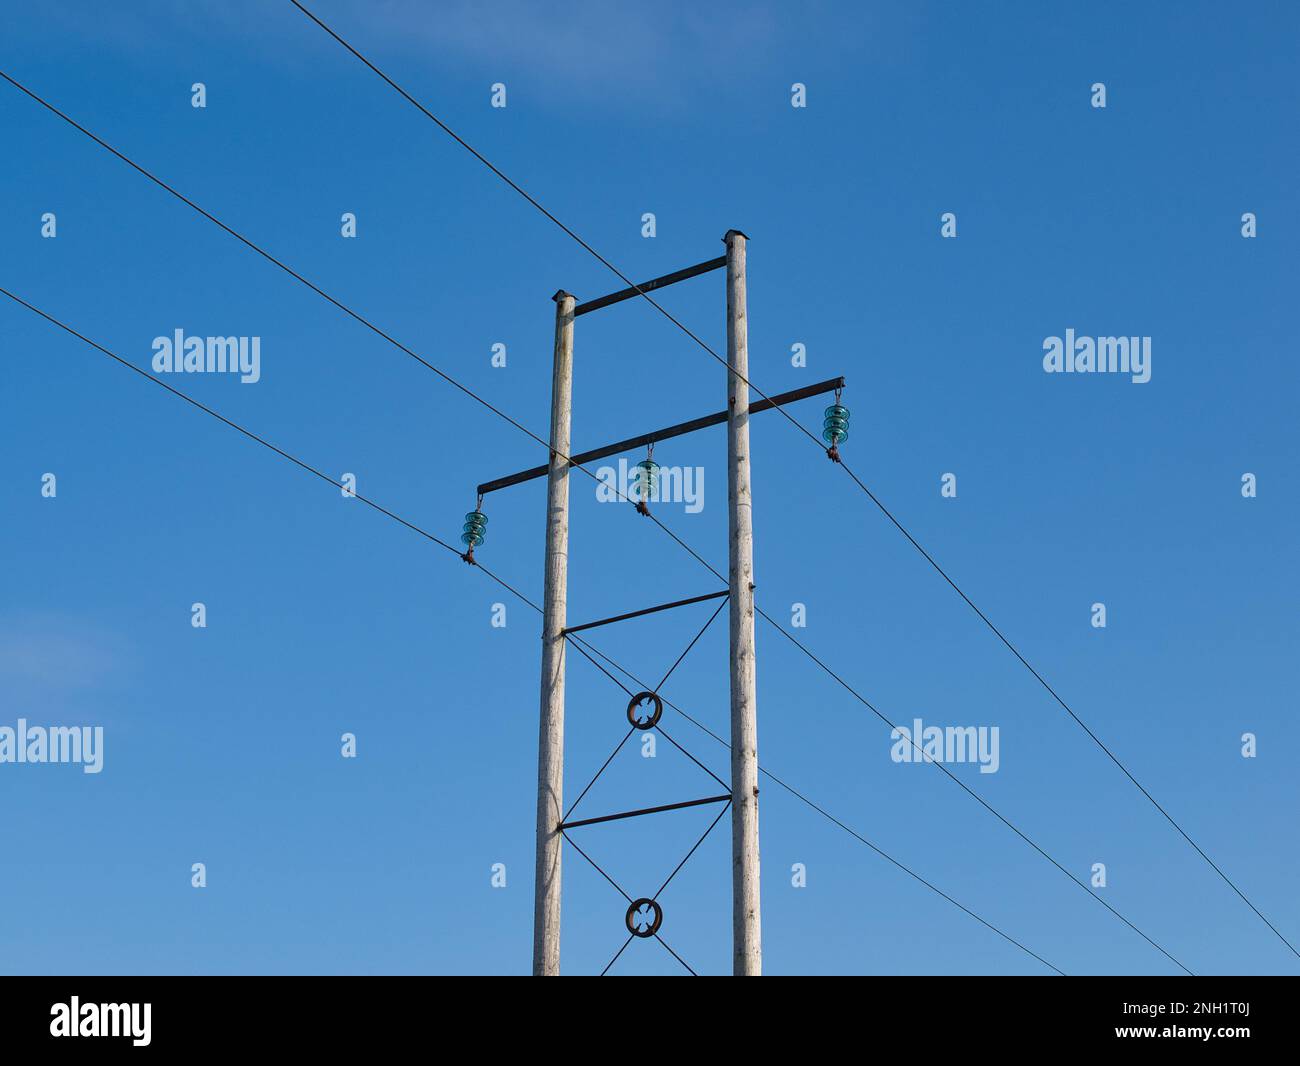 Drei Stromleitungen, die auf einem Querträger zwischen zwei Holzstangen aufgehängt sind. Leistungsisolatoren sind sichtbar. An einem sonnigen Tag mit blauem Himmel aufgenommen. Stockfoto